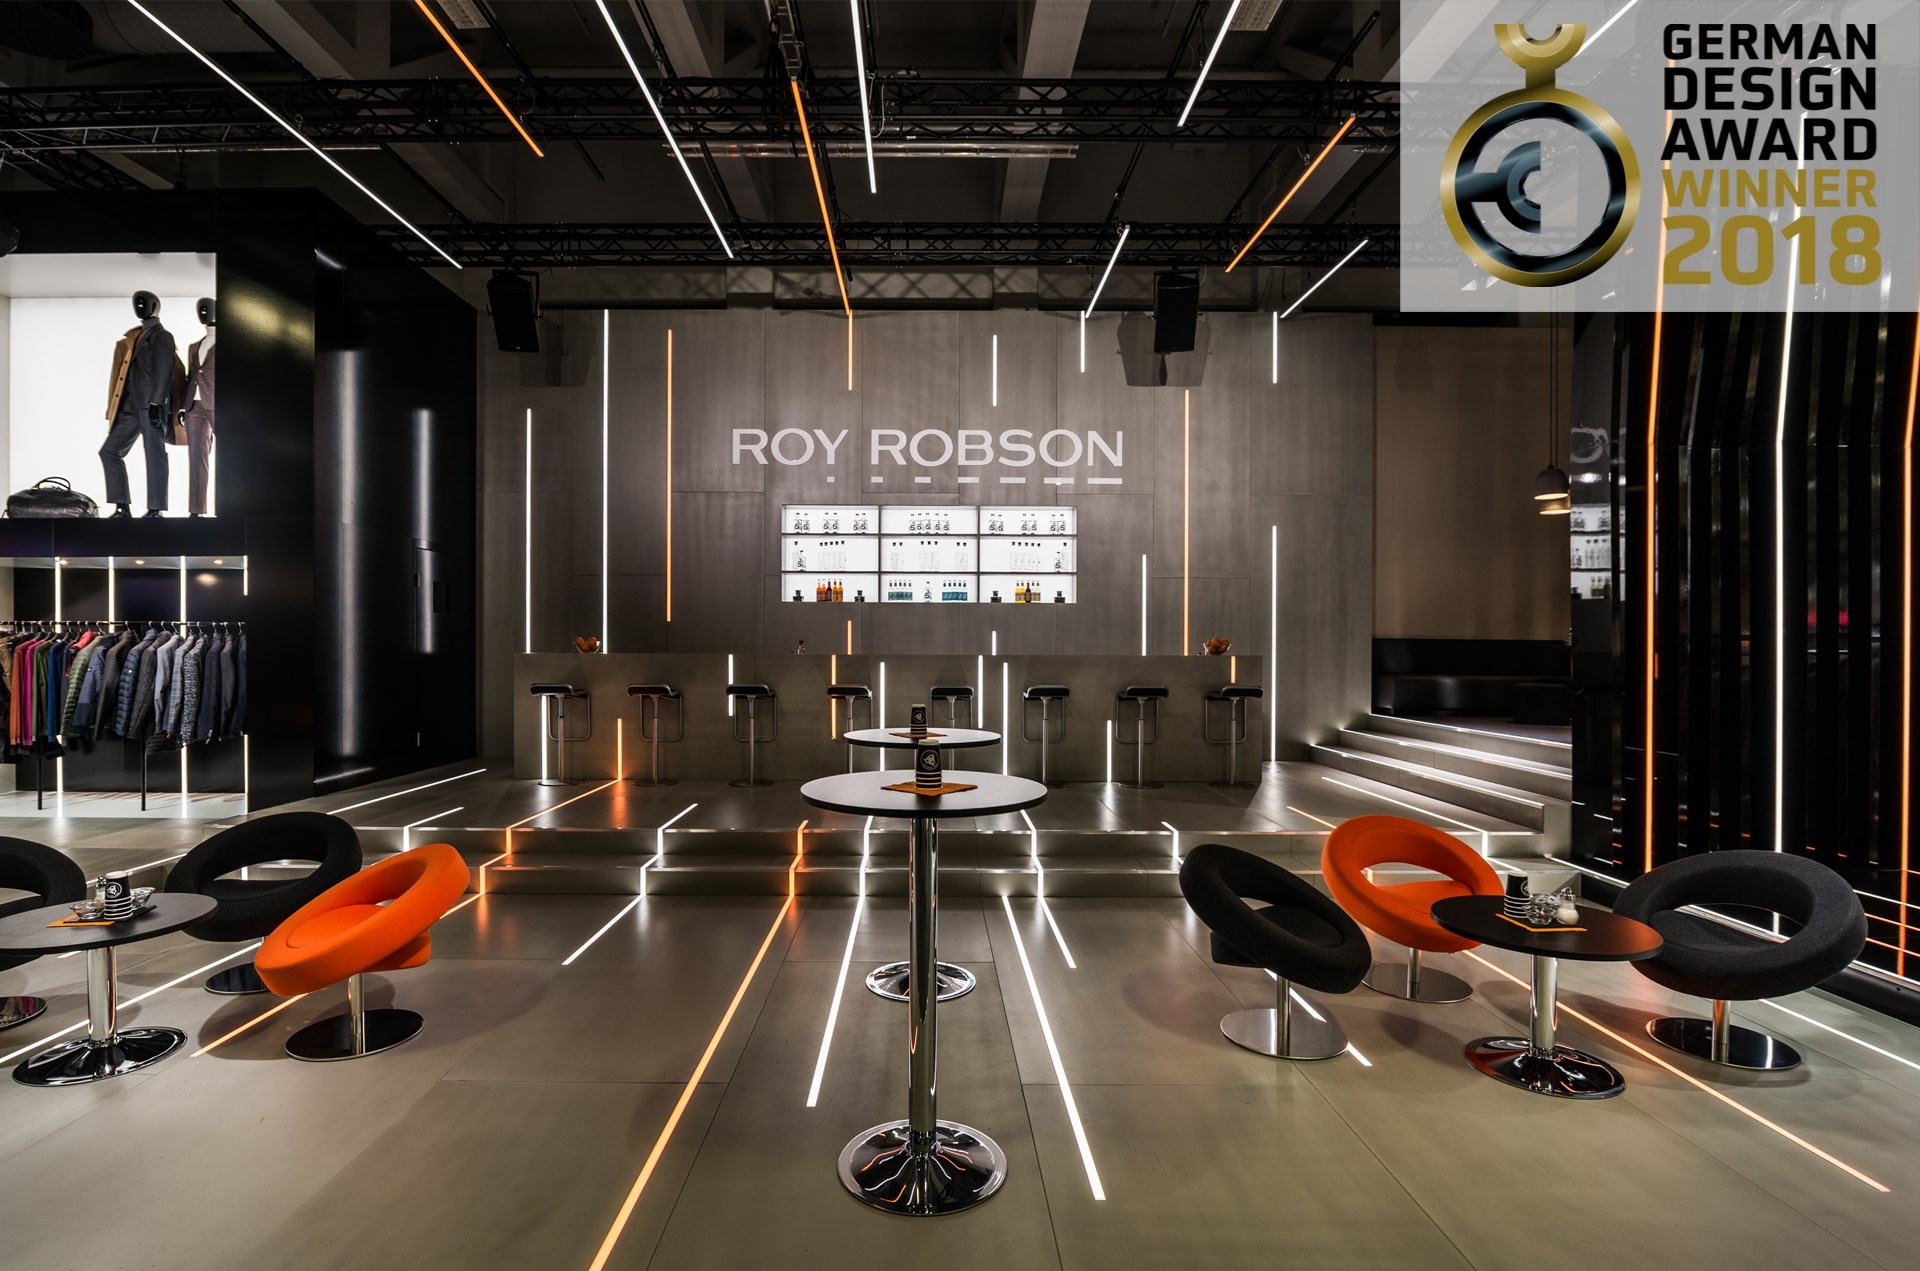 ROY ROBSON / PANORAMA 2017/18 - Gewinner "German Design Award 2018"